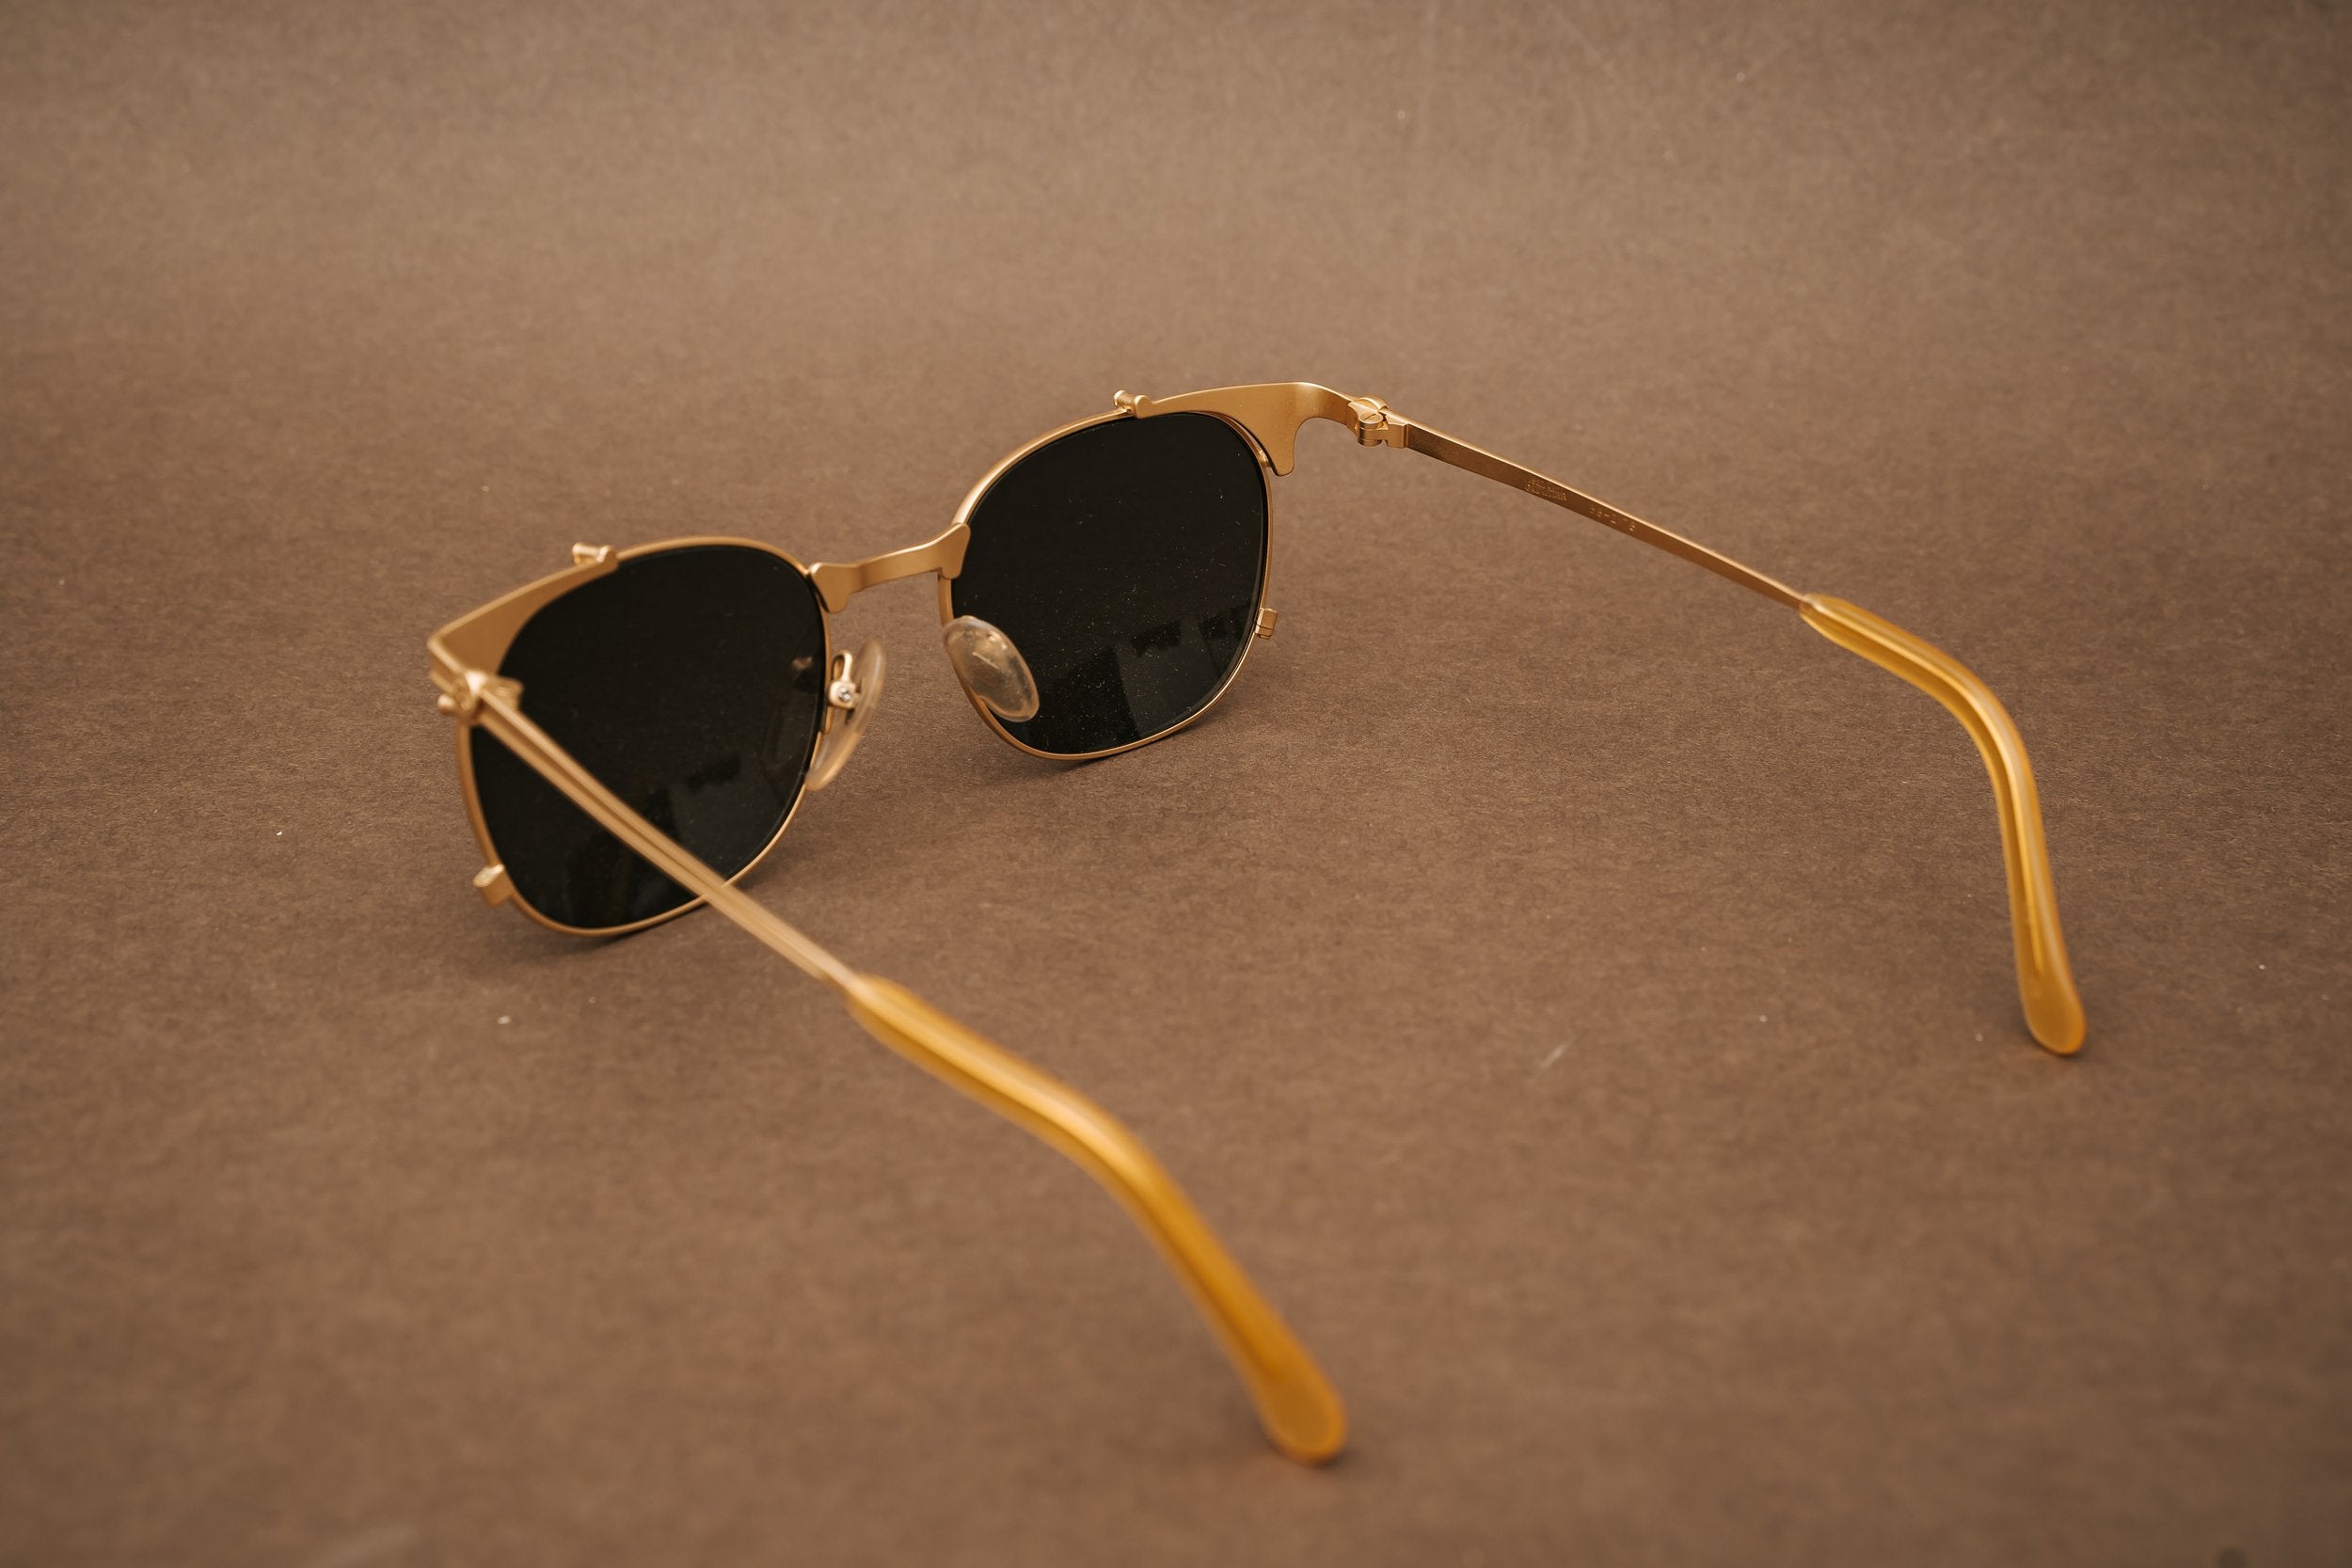 Jean Paul Gaultier 56-2175 sunglasses